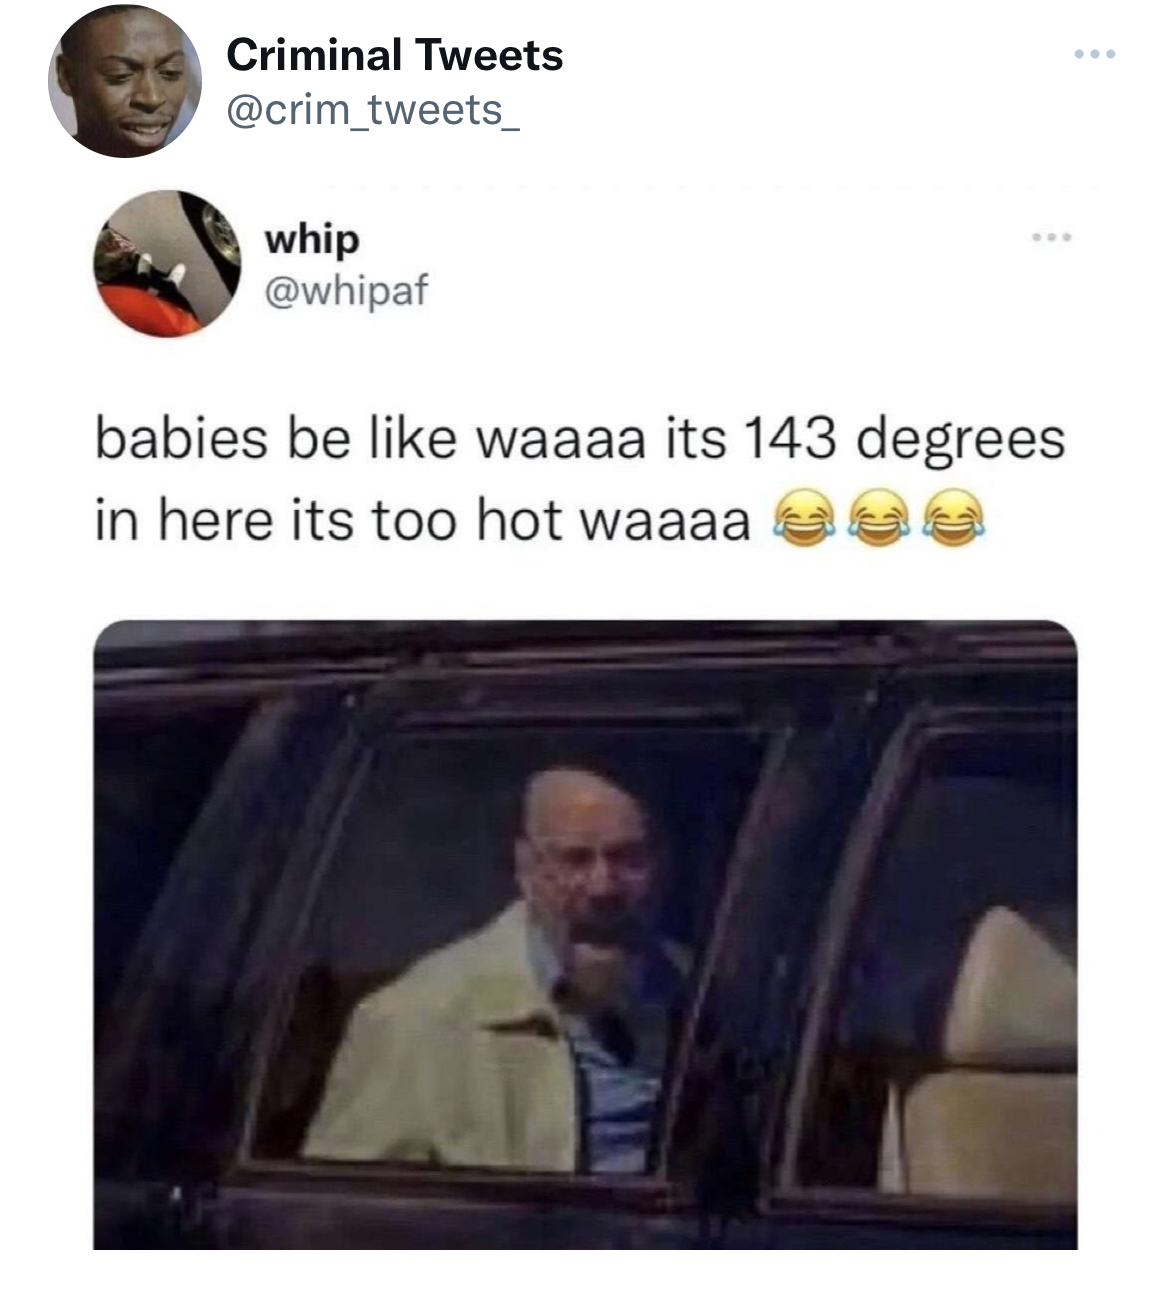 Savage Tweets - babies be like waaaa its 143 degrees - Criminal Tweets whip babies be waaaa its 143 degrees in here its too hot waaaa